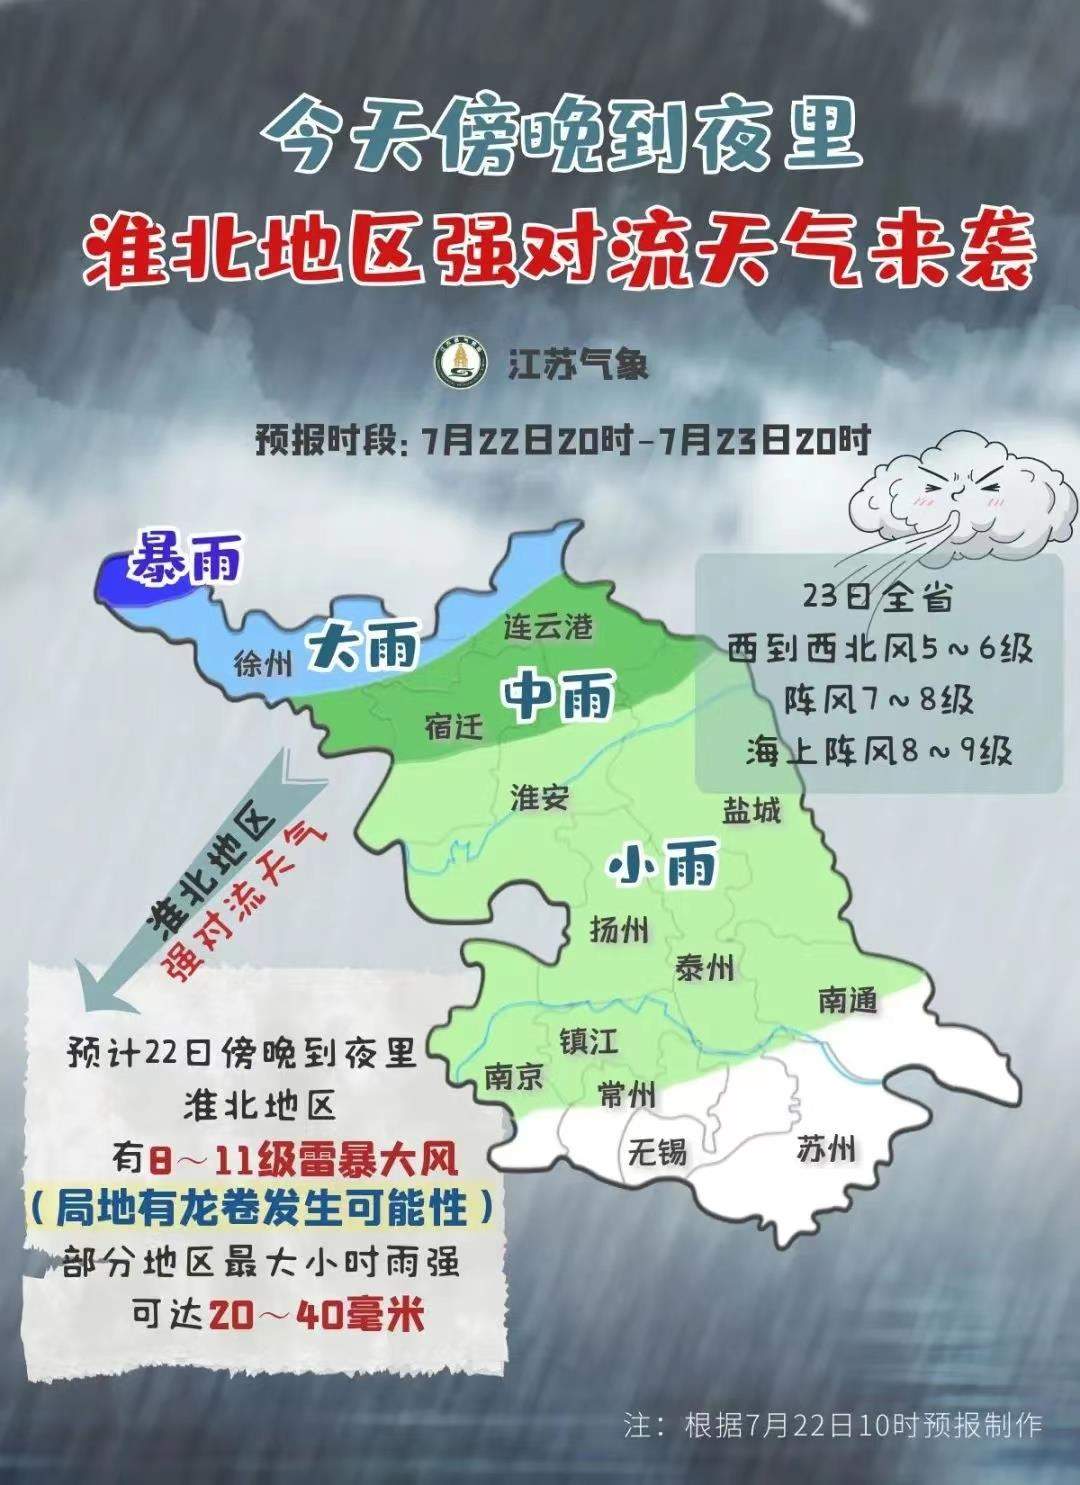 江苏淮北地区有11级雷暴大风 局地可能有龙卷